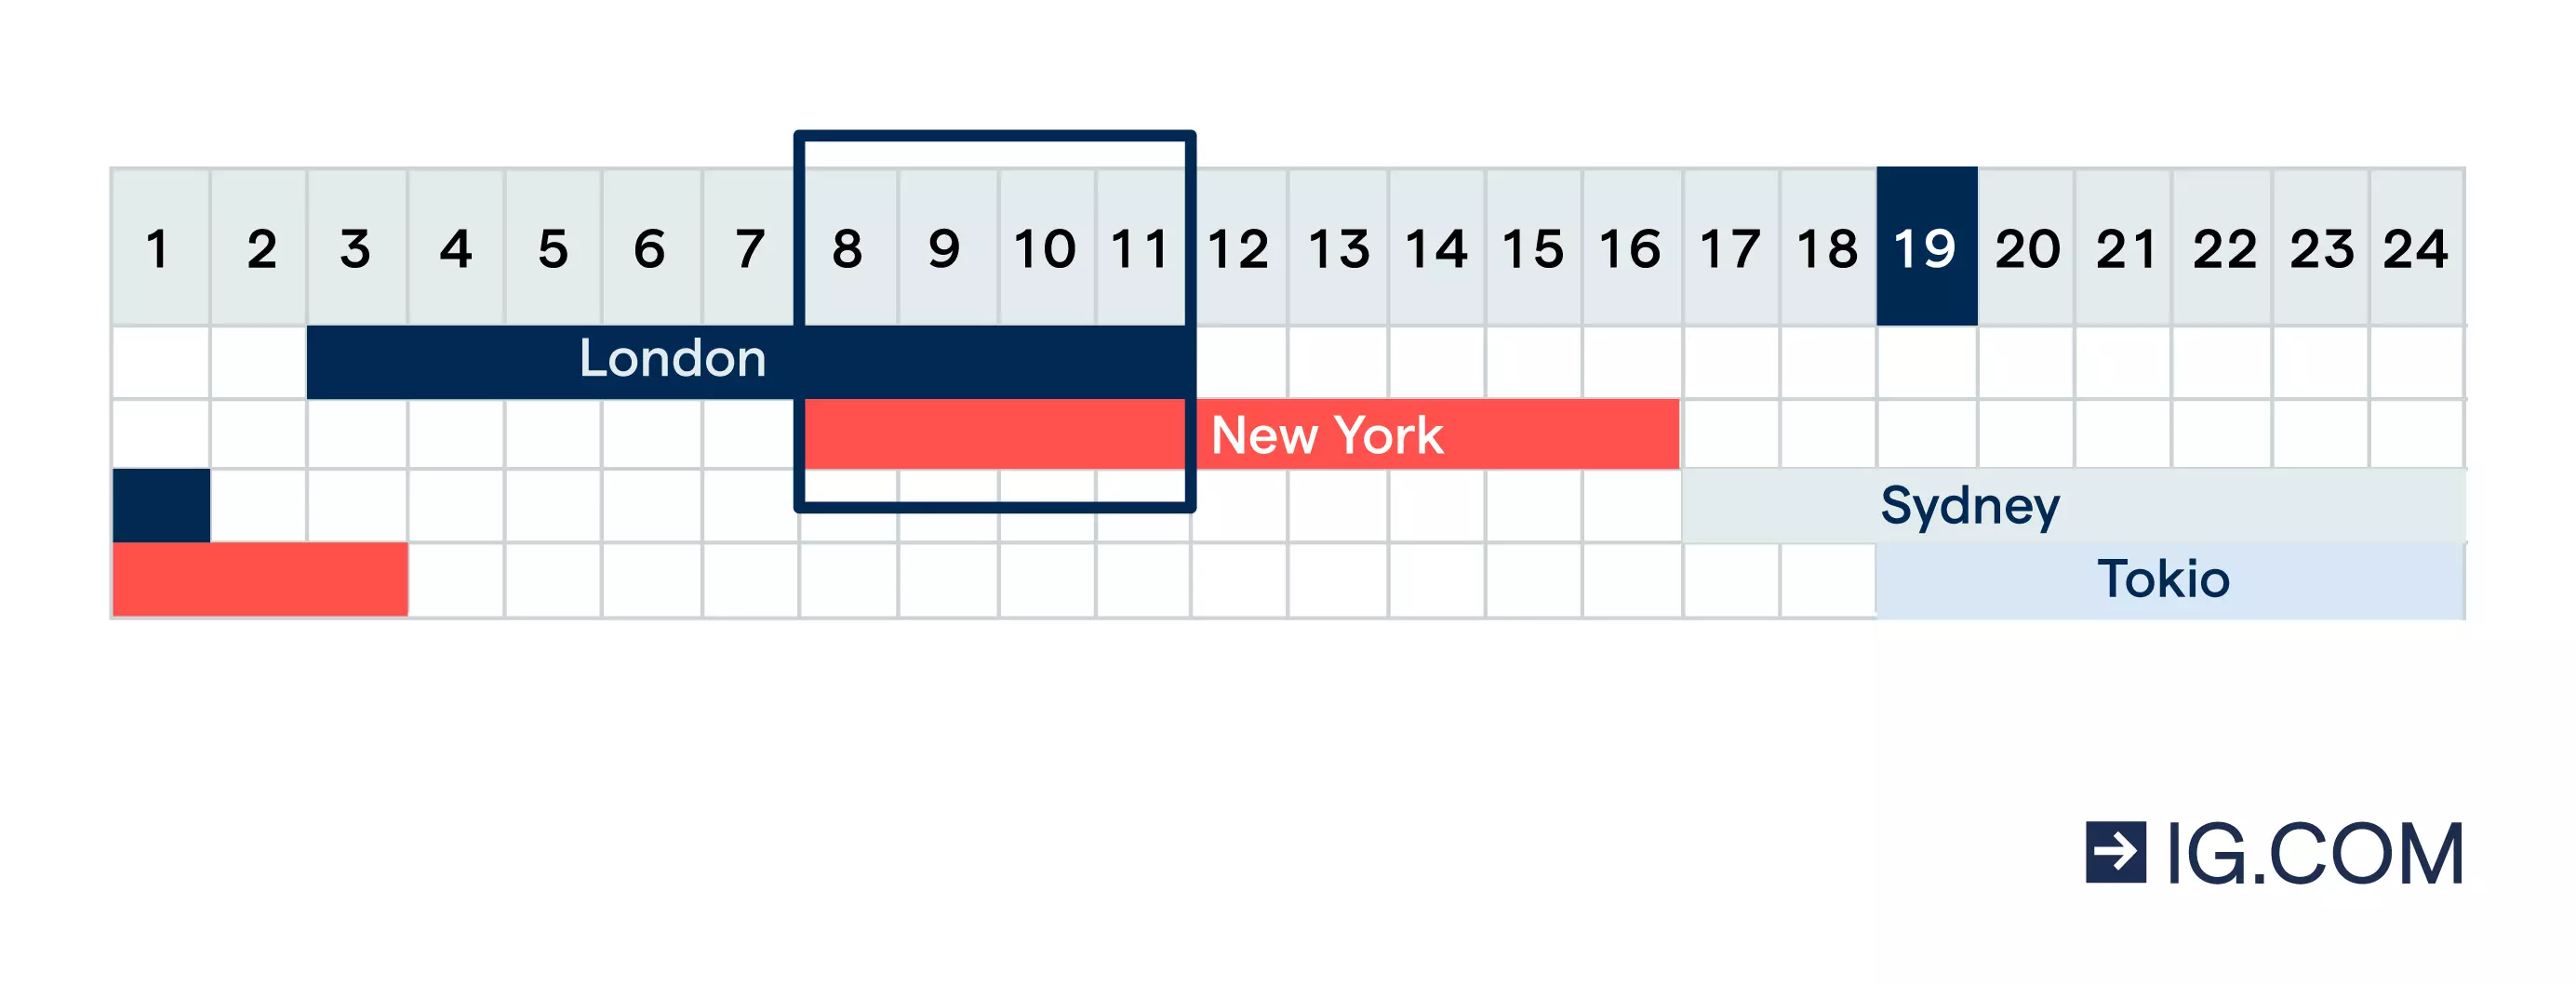 Ein Diagramm mit den Handelszeiten in London, New York, Sydney und Tokio. Die vier Stunden, in denen sich die Handelszeiten in London und New York überschneiden, ist eingekreist.